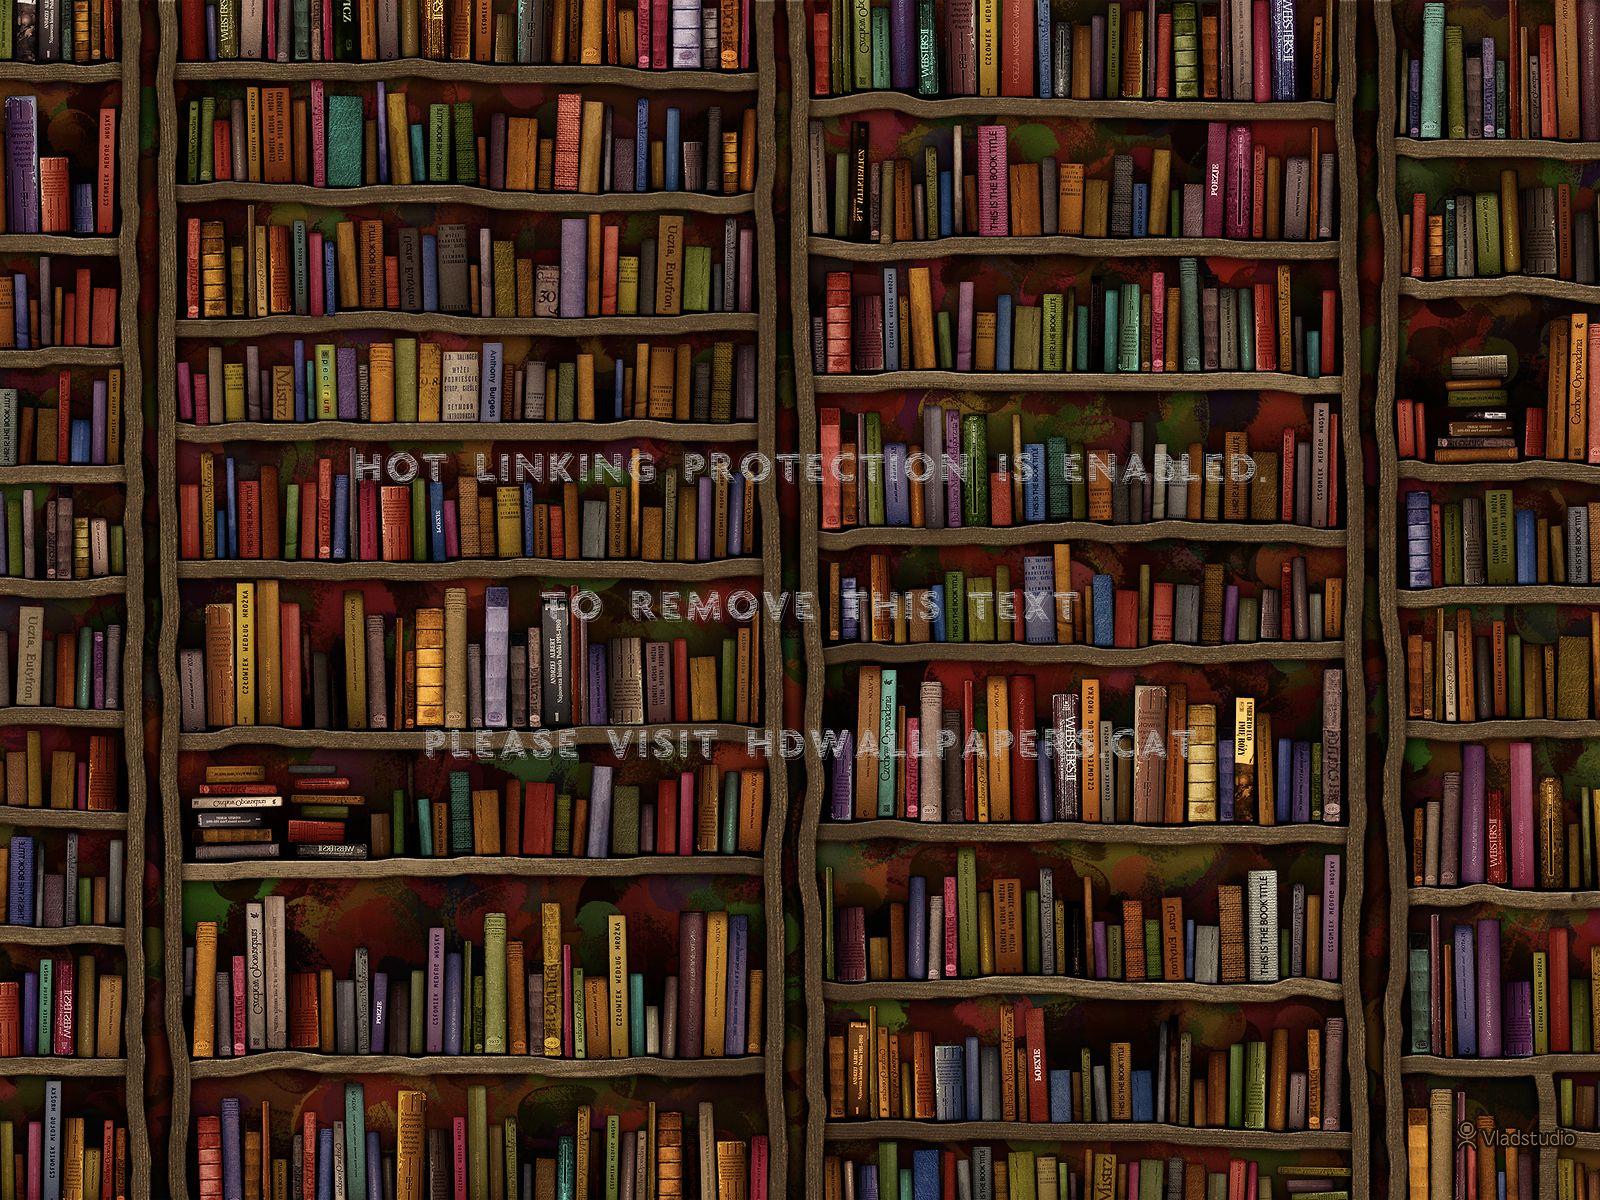 Bookshelf Wallpapers: Nếu bạn đang tìm kiếm những hình ảnh độc đáo và đẹp mắt cho màn hình điện thoại của mình, bộ sưu tập Bookshelf Wallpapers của chúng tôi chắc chắn sẽ là lựa chọn tuyệt vời! Với đủ loại hình ảnh và phong cách khác nhau, bạn sẽ có thể tìm thấy bộ sưu tập phù hợp với sở thích và gu thẩm mỹ của mình.